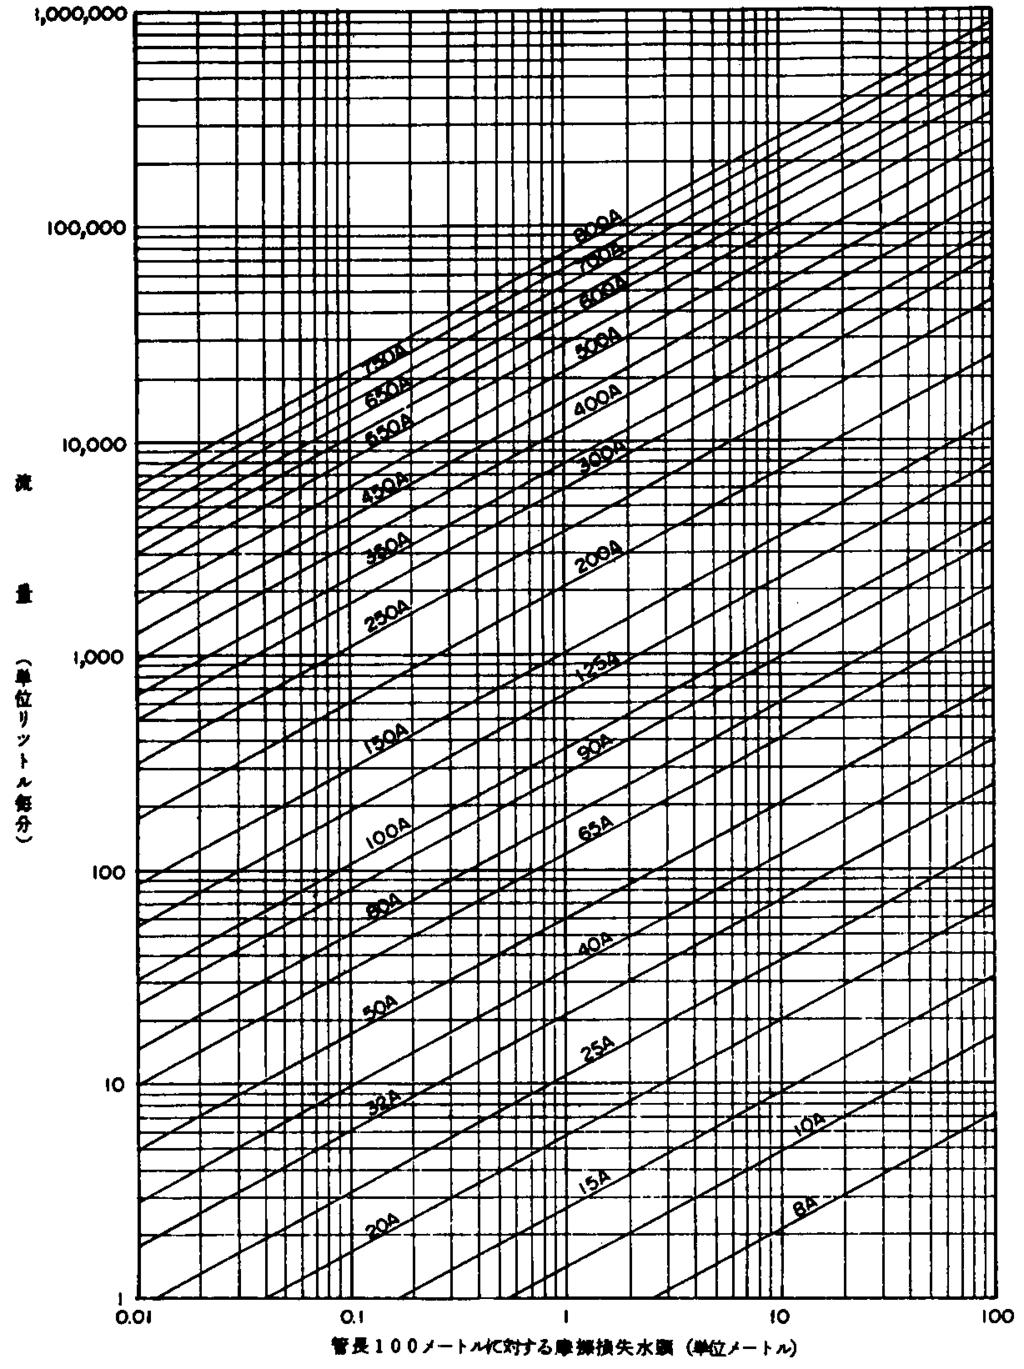 図 4-8-6 溶融亜鉛めっきを施さない配管のうち乾式の部分に用いる摩擦損失水頭線図配管用炭素鋼鋼管 (JISG3452-1978)